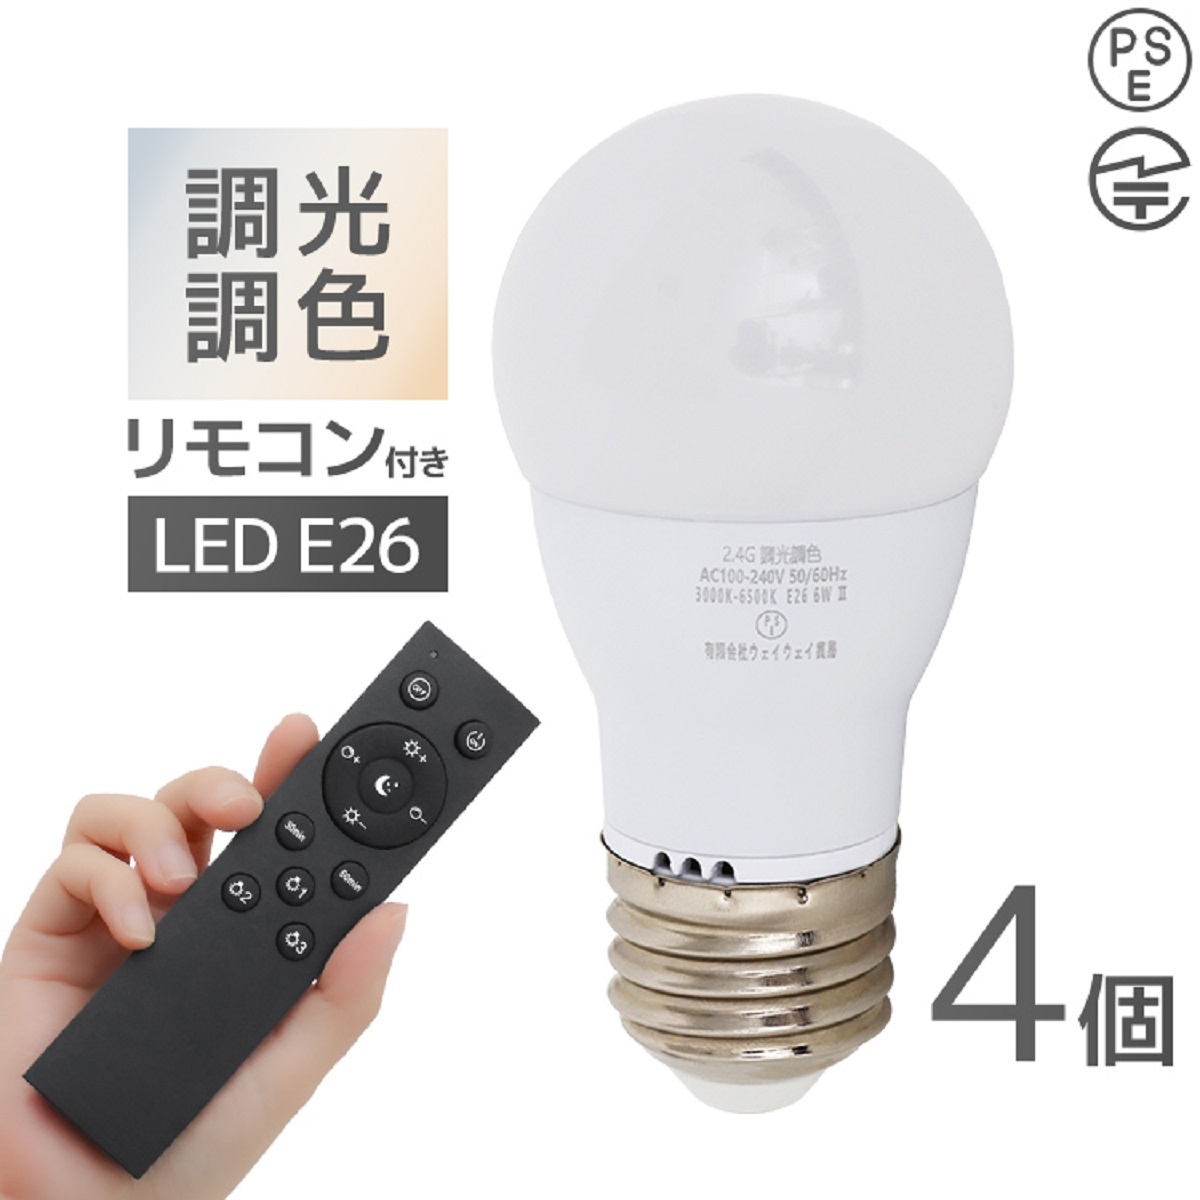 LED電球 調光調色 専用リモコン付 電球4個 LED照明 口金E17 60W相当 筒 